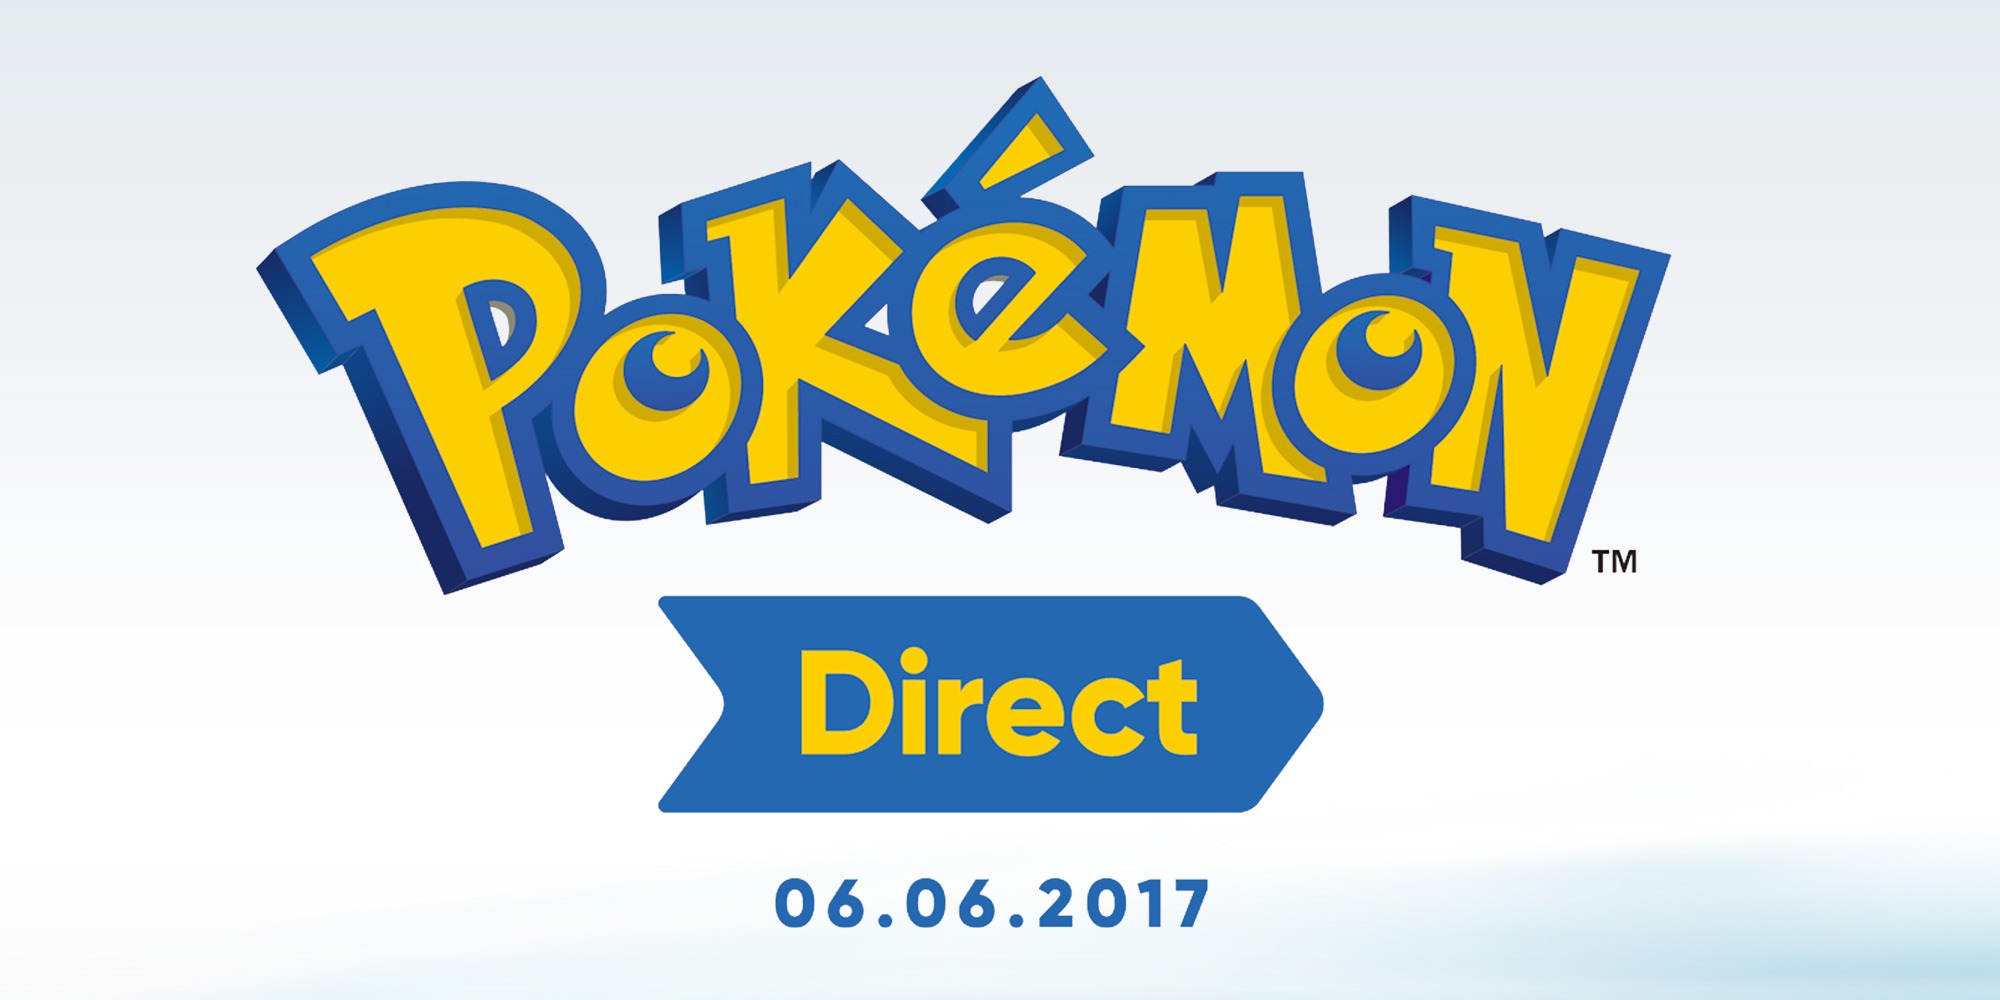 Annunciato un Pokémon Direct per domani 6 giugno alle 16.00: nuovo gioco Pokémon in arrivo?